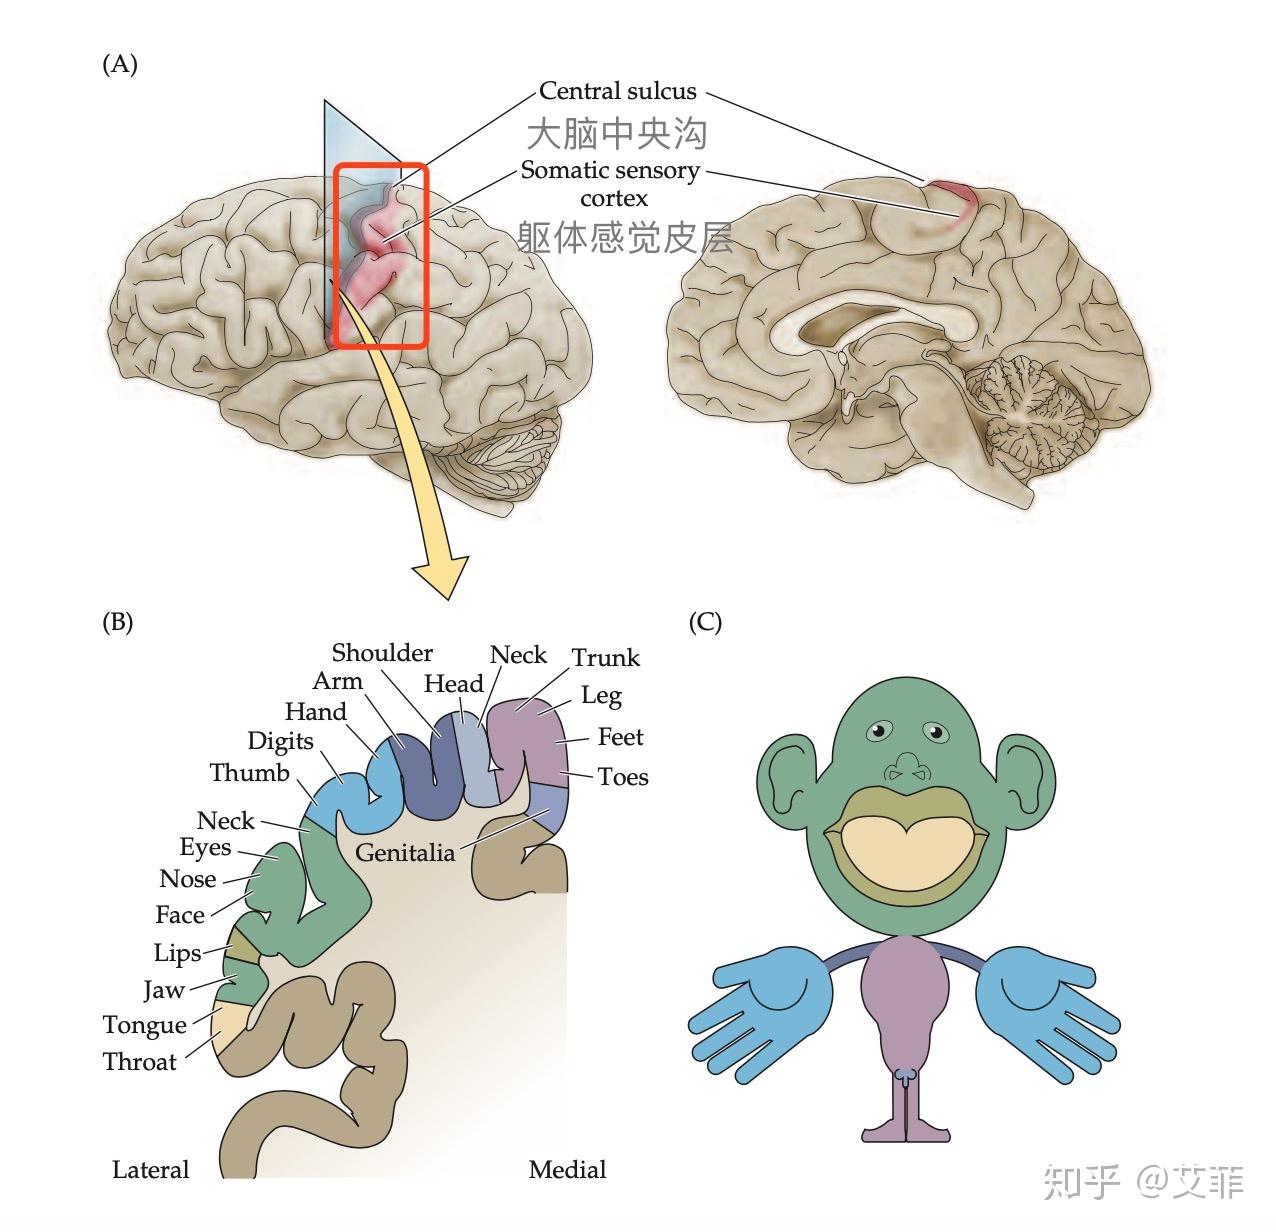 【雷霆解剖系列】人体感受器的分布及解剖 - 脑医汇 - 神外资讯 - 神介资讯